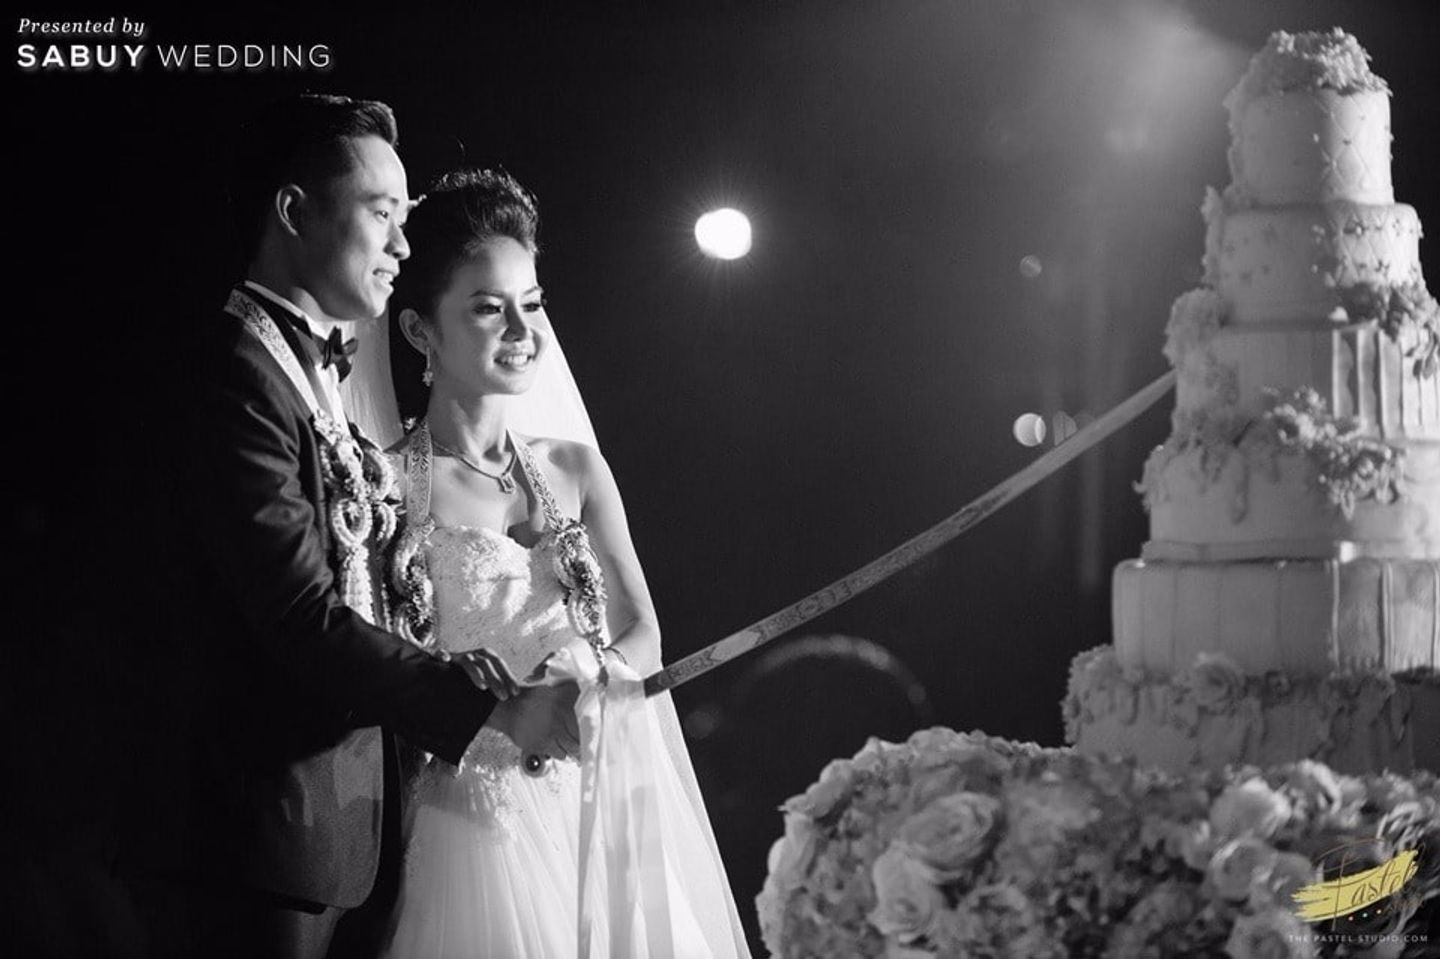 พิธีแต่งงาน,บ่าวสาว,งานแต่งงาน,รูปงานแต่ง,ตัดเค้กงานแต่ง รีวิวงานแต่งเน้นแสงสี ลุคหวานพอดีด้วยสีพาสเทล @Noeud d'Amour Saraburi